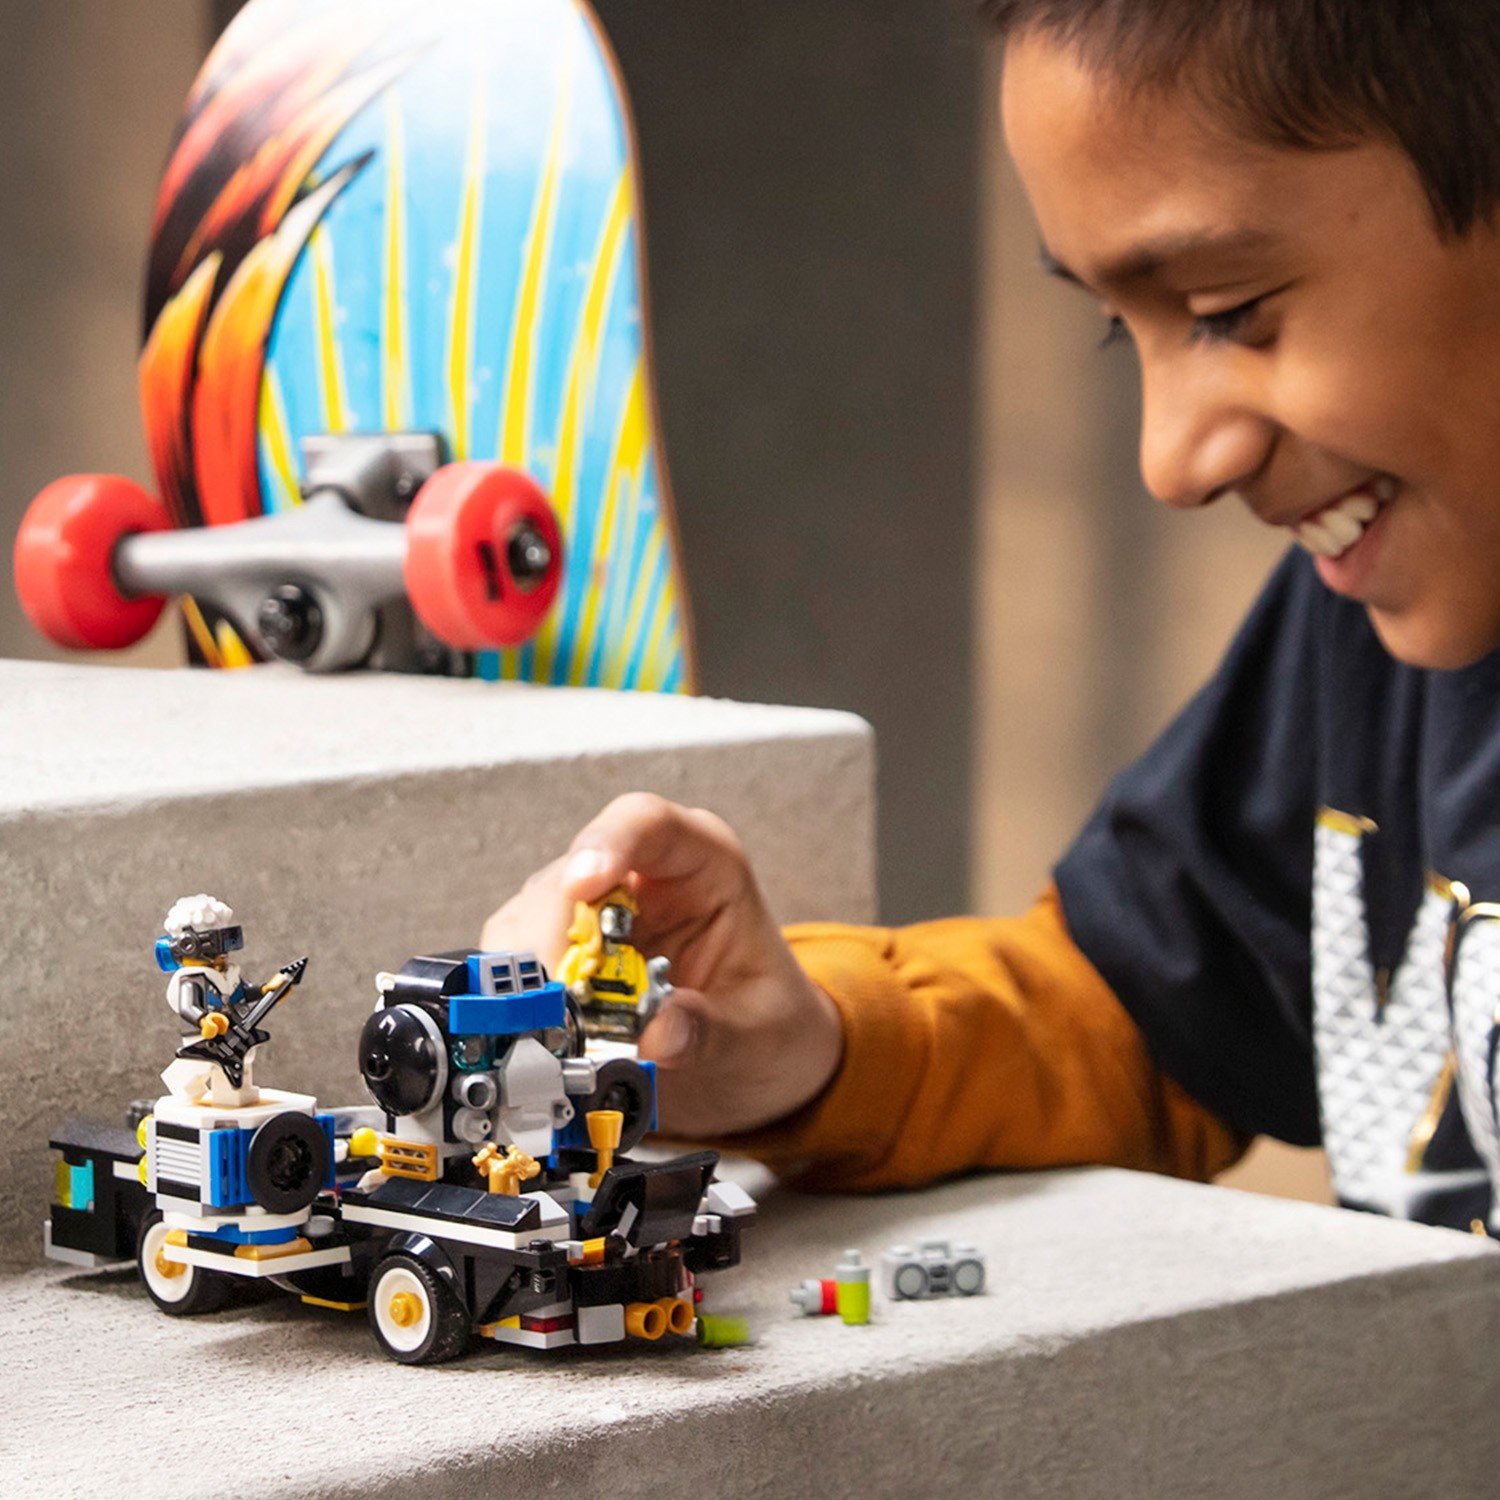 Конструктор LEGO VIDIYO Robo HipHop Car (Машина Хип-Хоп Робота) 43112